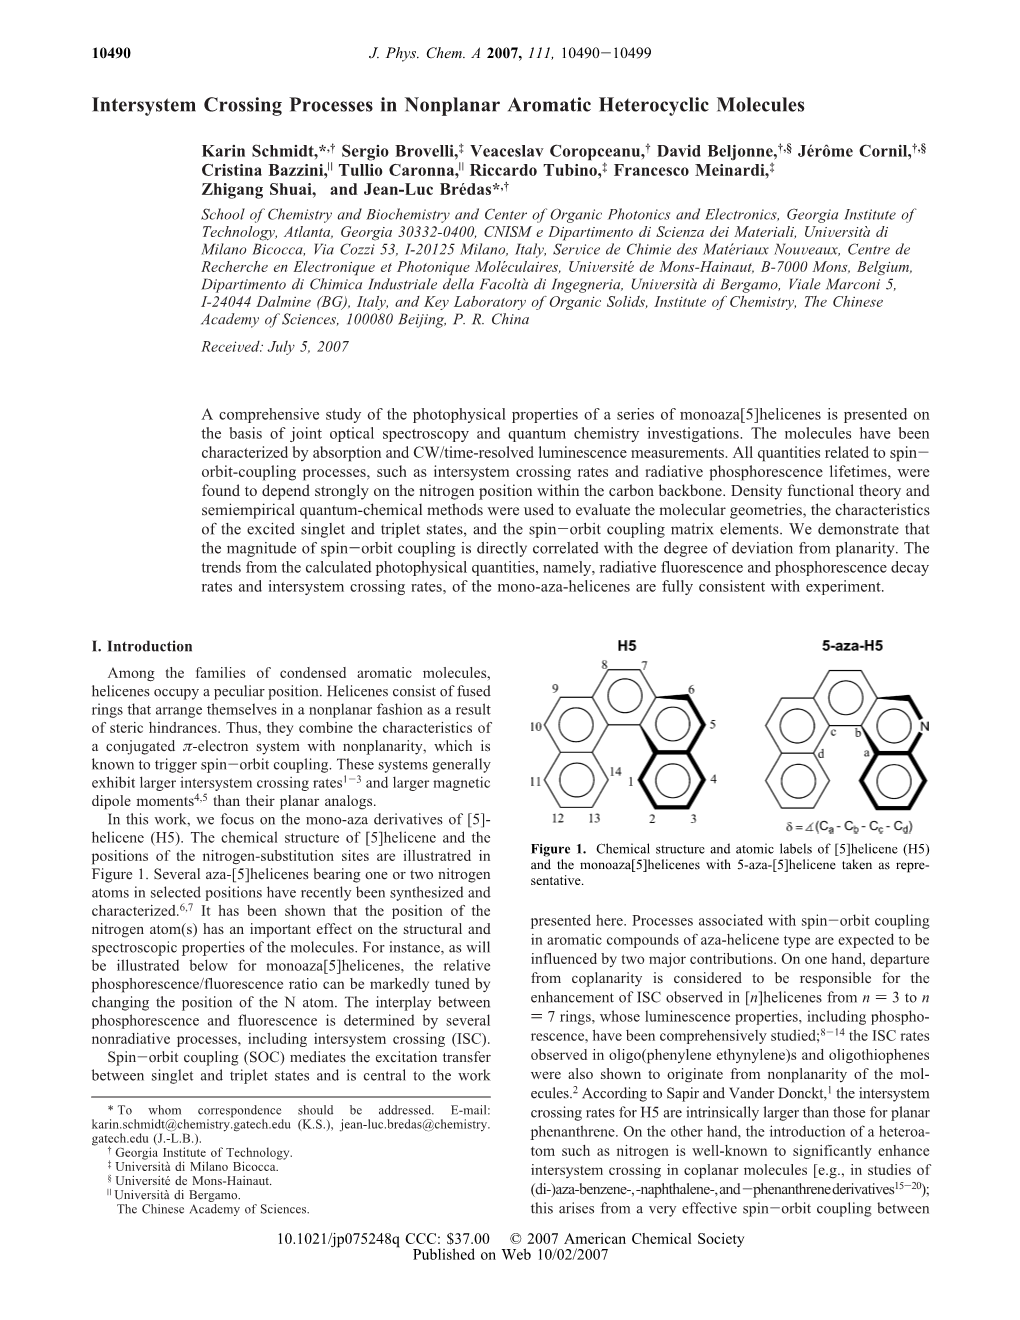 Intersystem Crossing Processes in Nonplanar Aromatic Heterocyclic Molecules